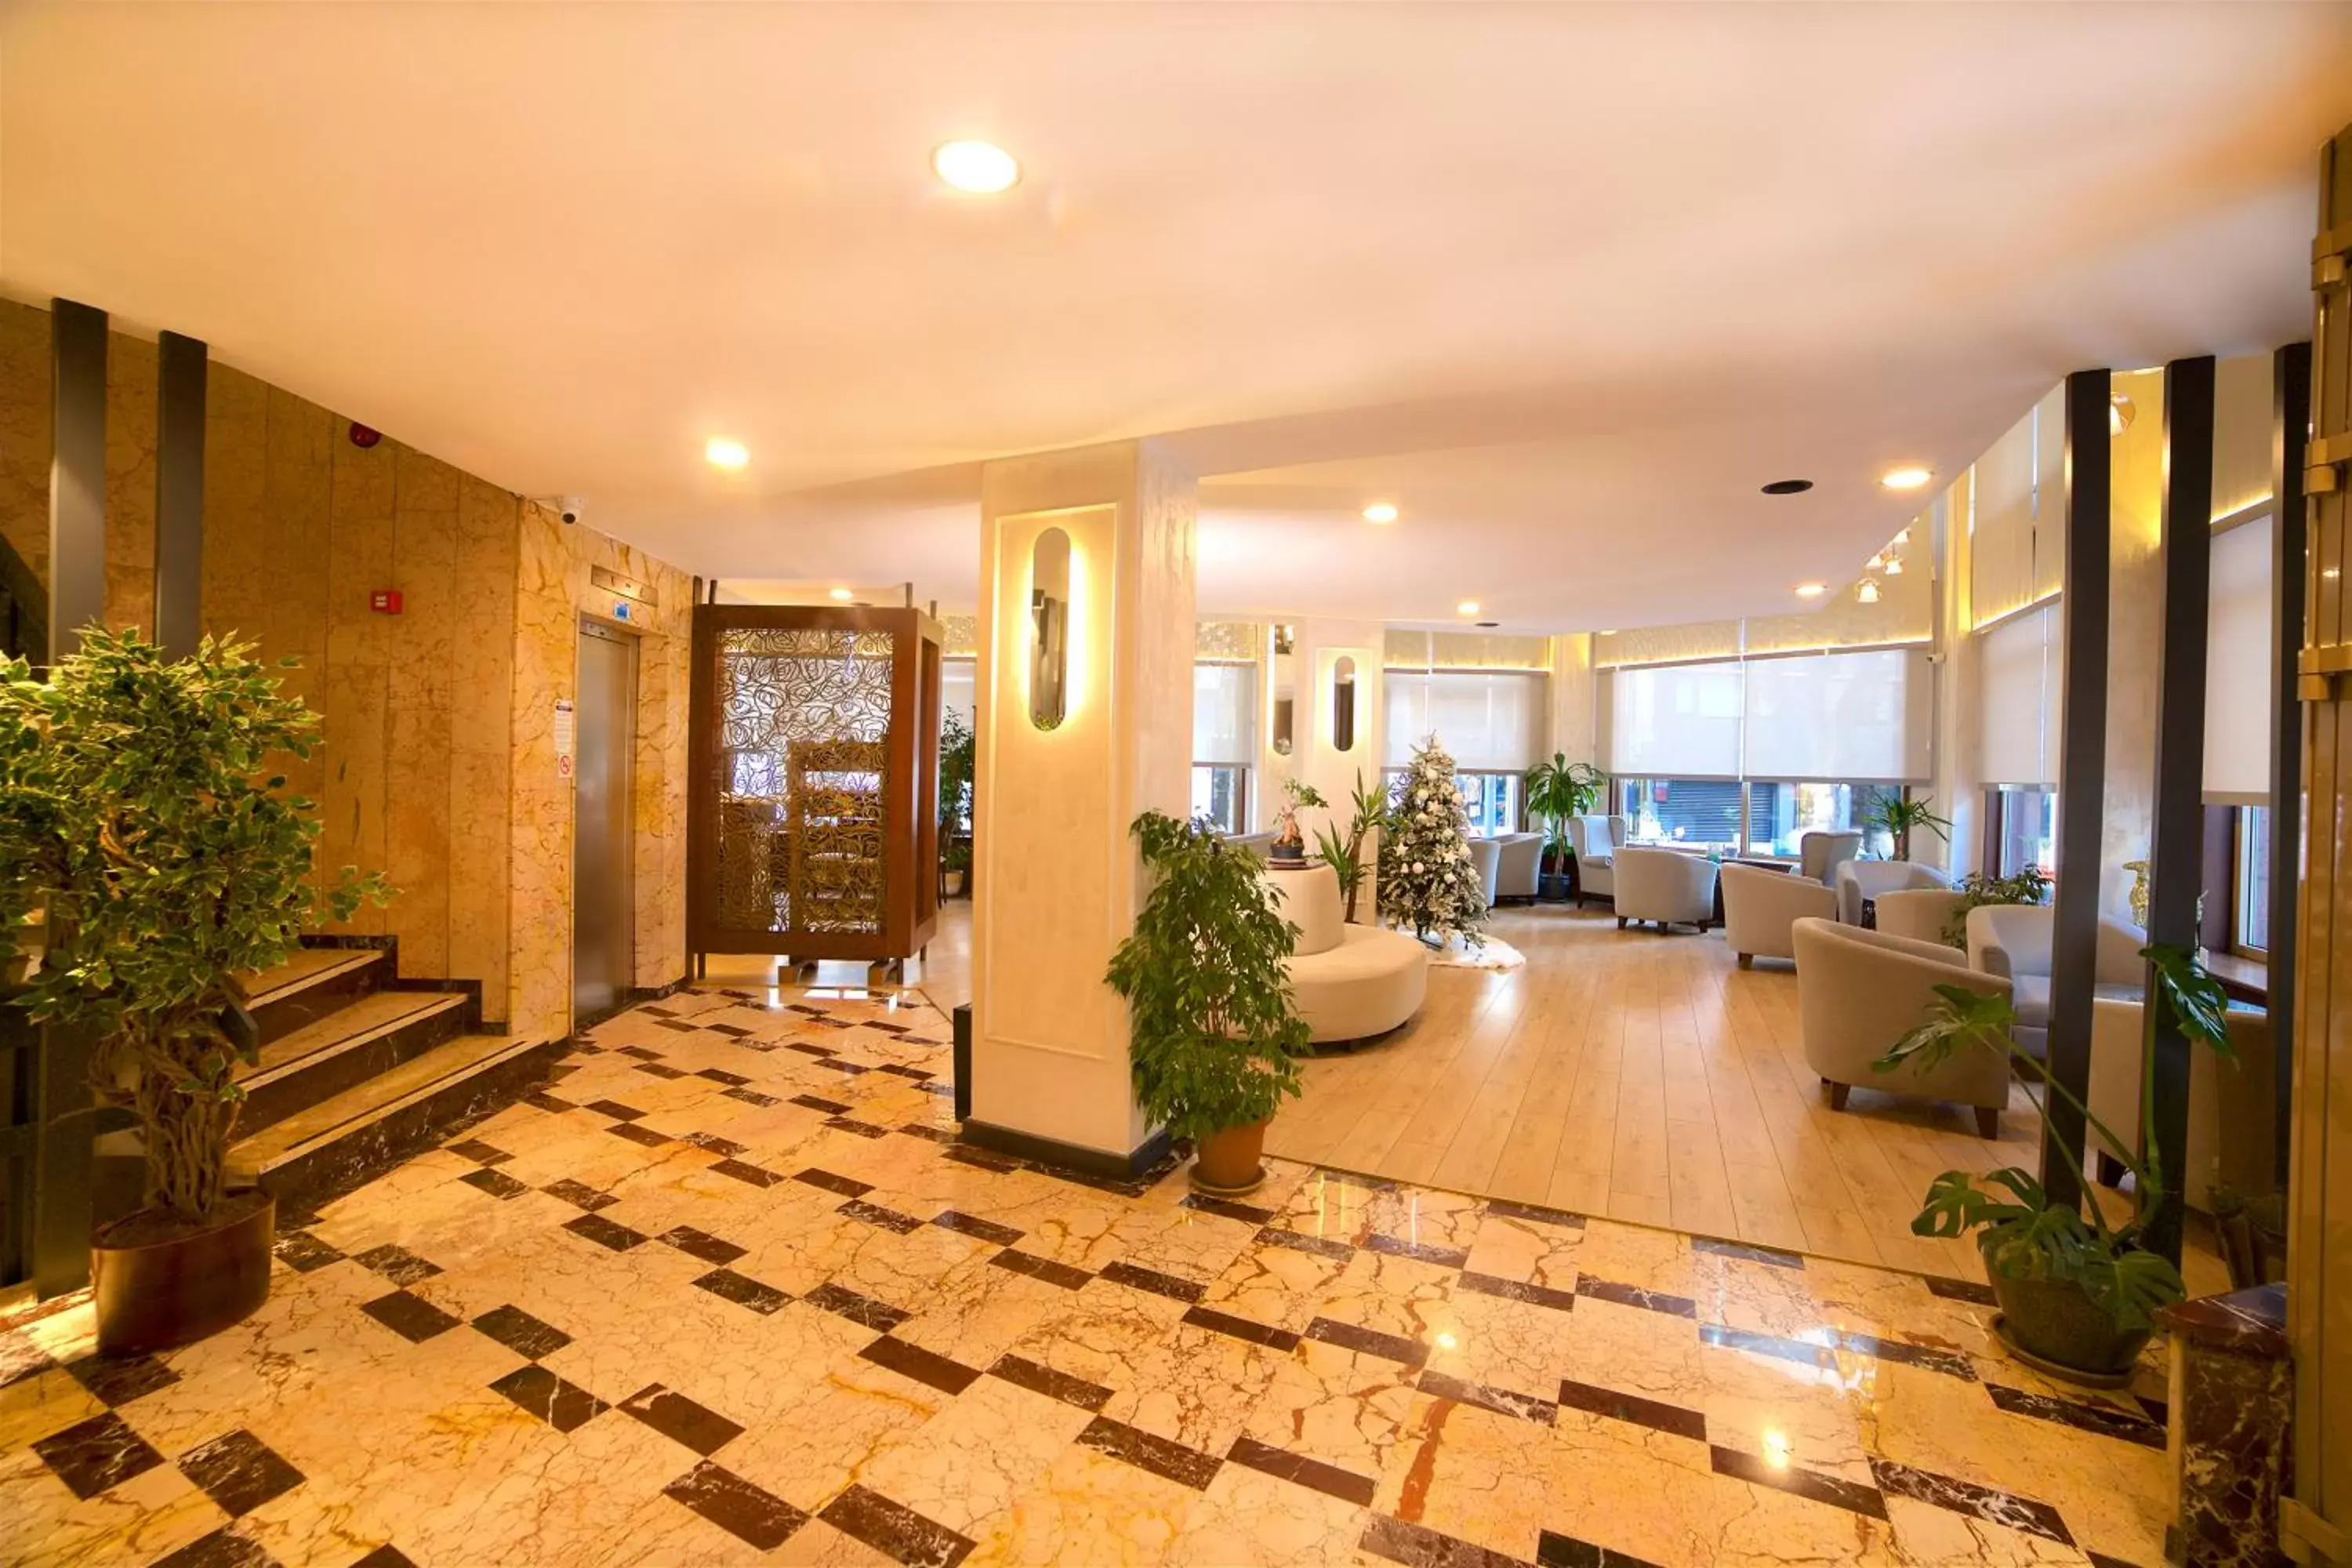 Lobby or reception, Lobby/Reception in Barin Hotel